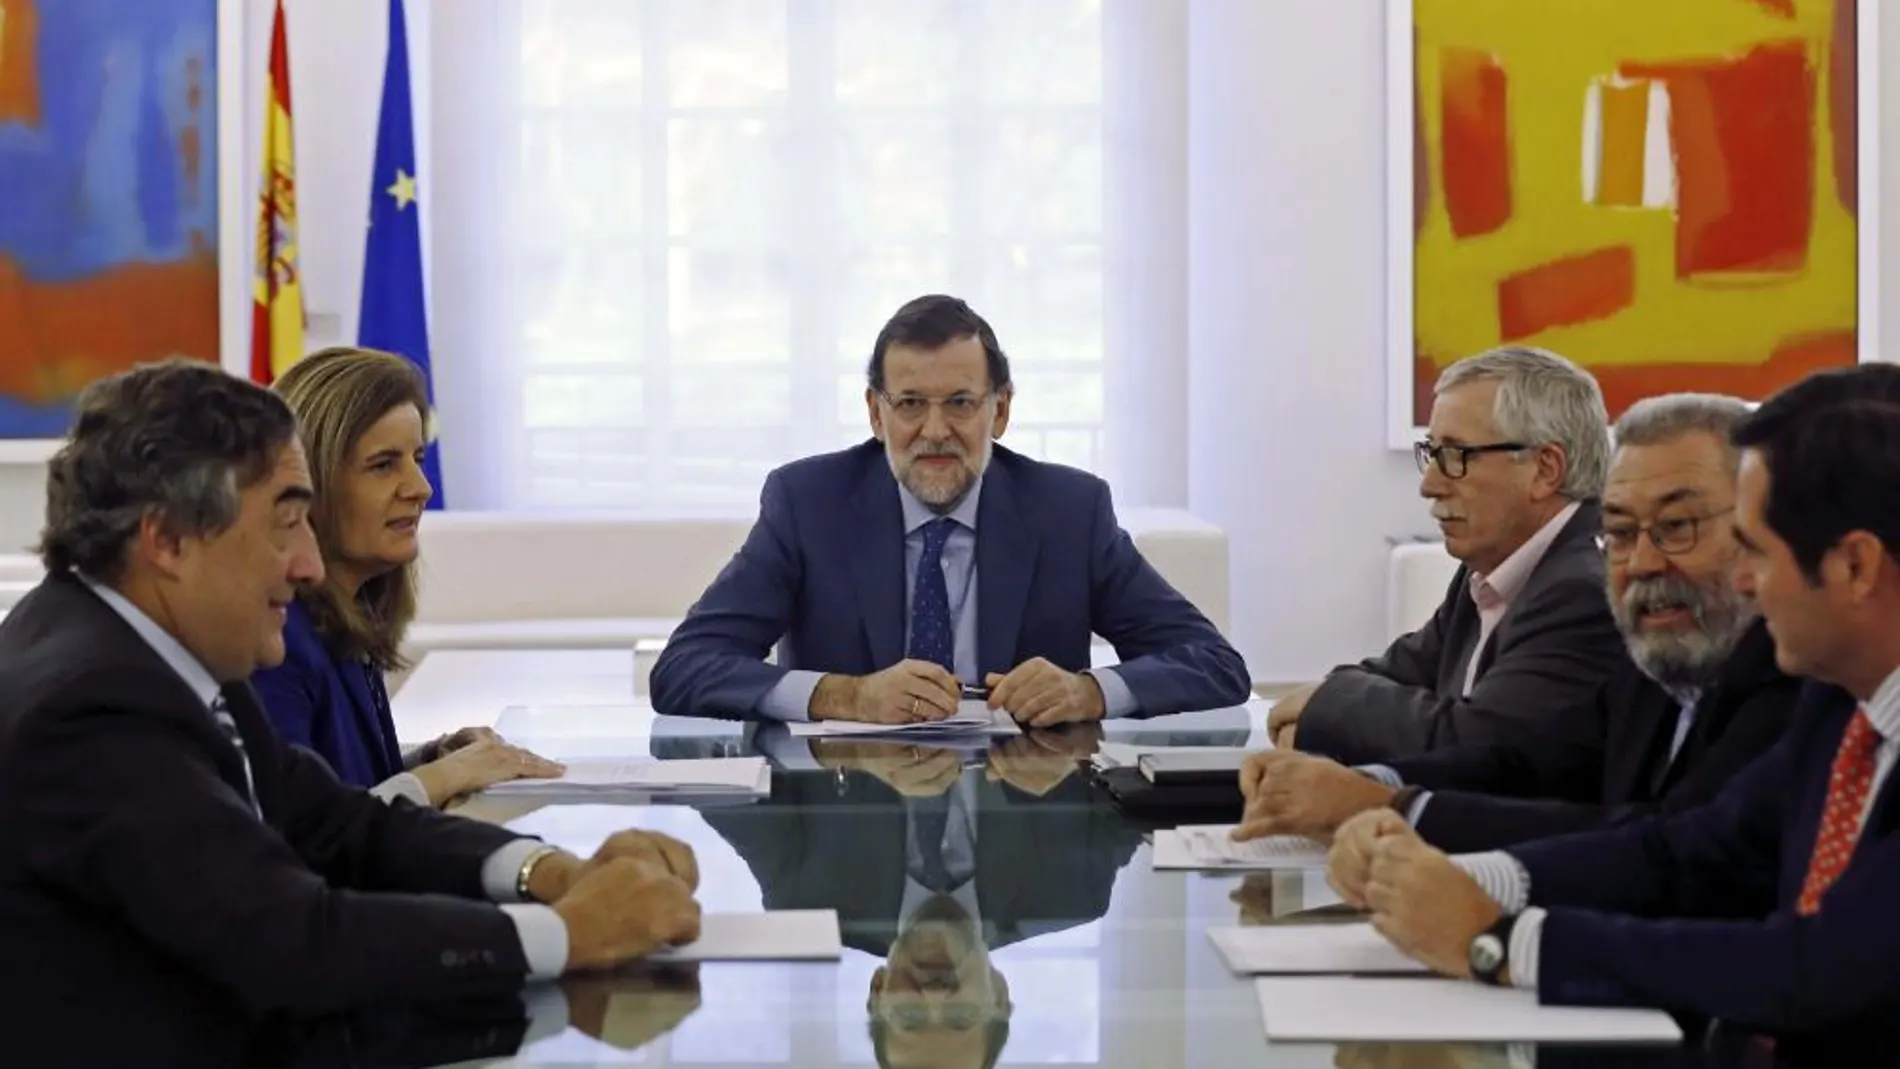 El presidente del Gobierno Mariano Rajoy (c), junto a los secretarios generales de UGT y CC OO, Cándido Méndez e Ignacio Fernández Toxo.